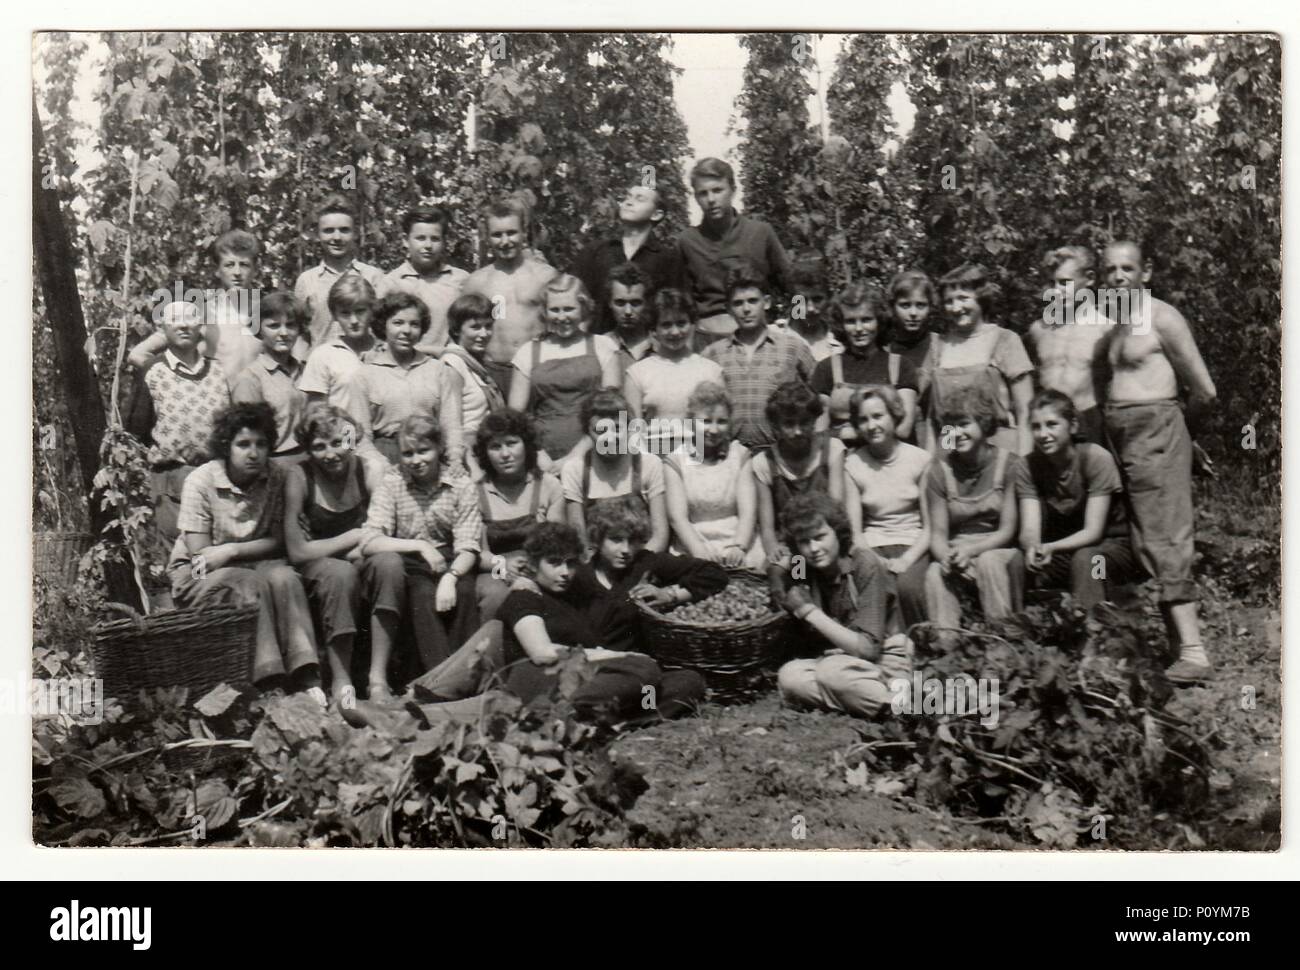 Der TSCHECHOSLOWAKISCHEN SOZIALISTISCHEN REPUBLIK, ca. 1965: Ein vintage Foto zeigt junge Trichter während hop Kommissionierung, circa 1965. Stockfoto